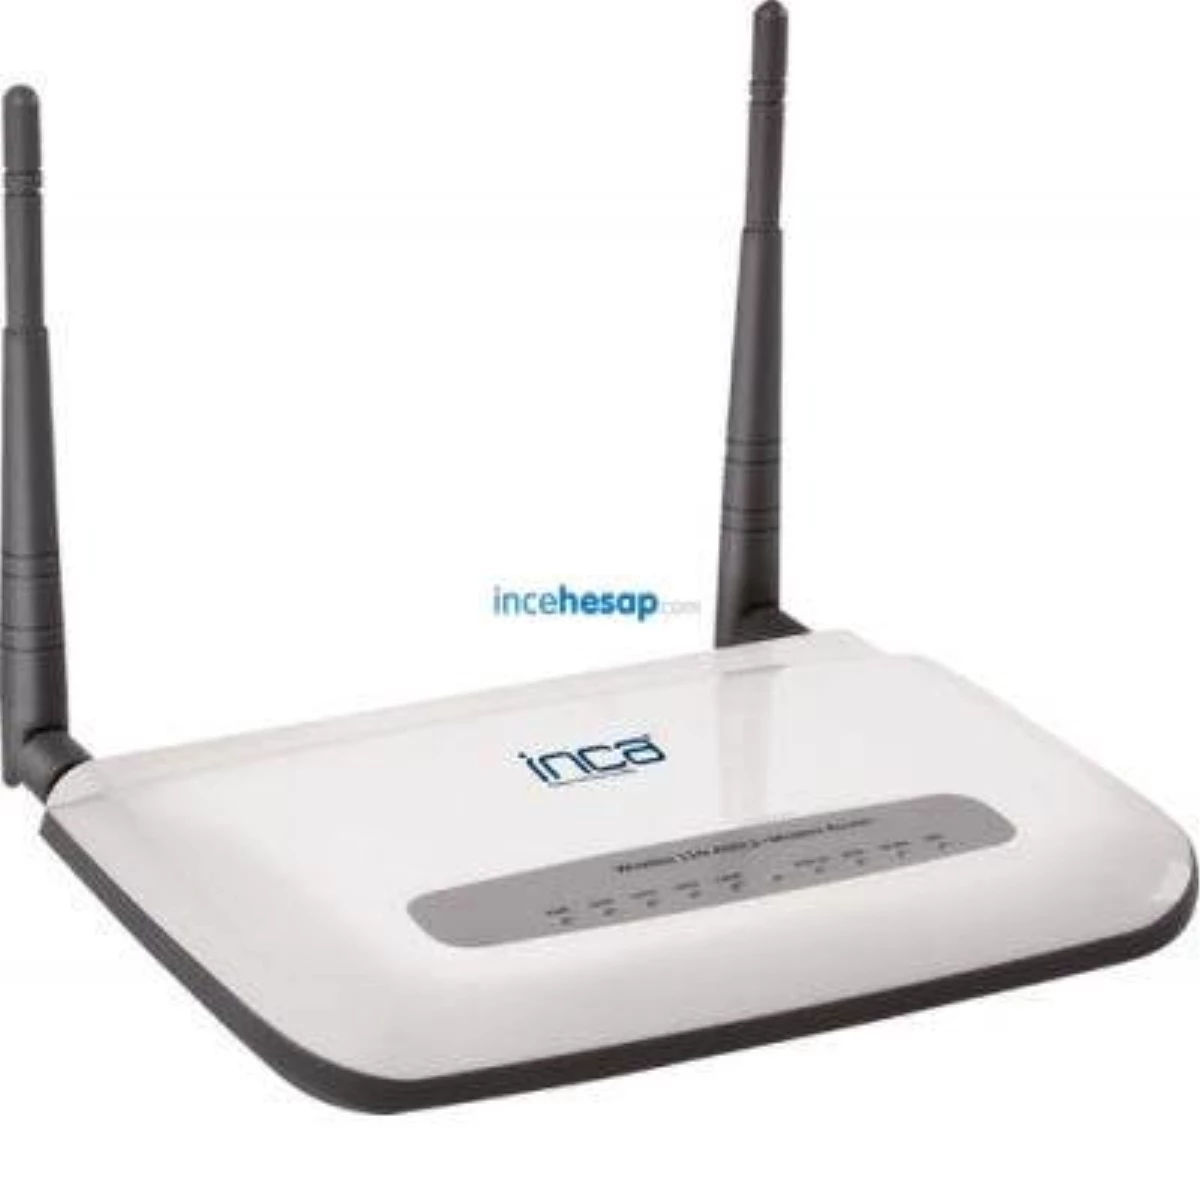 Inca Im-310nx 4 Port 300mbps Modem + Router